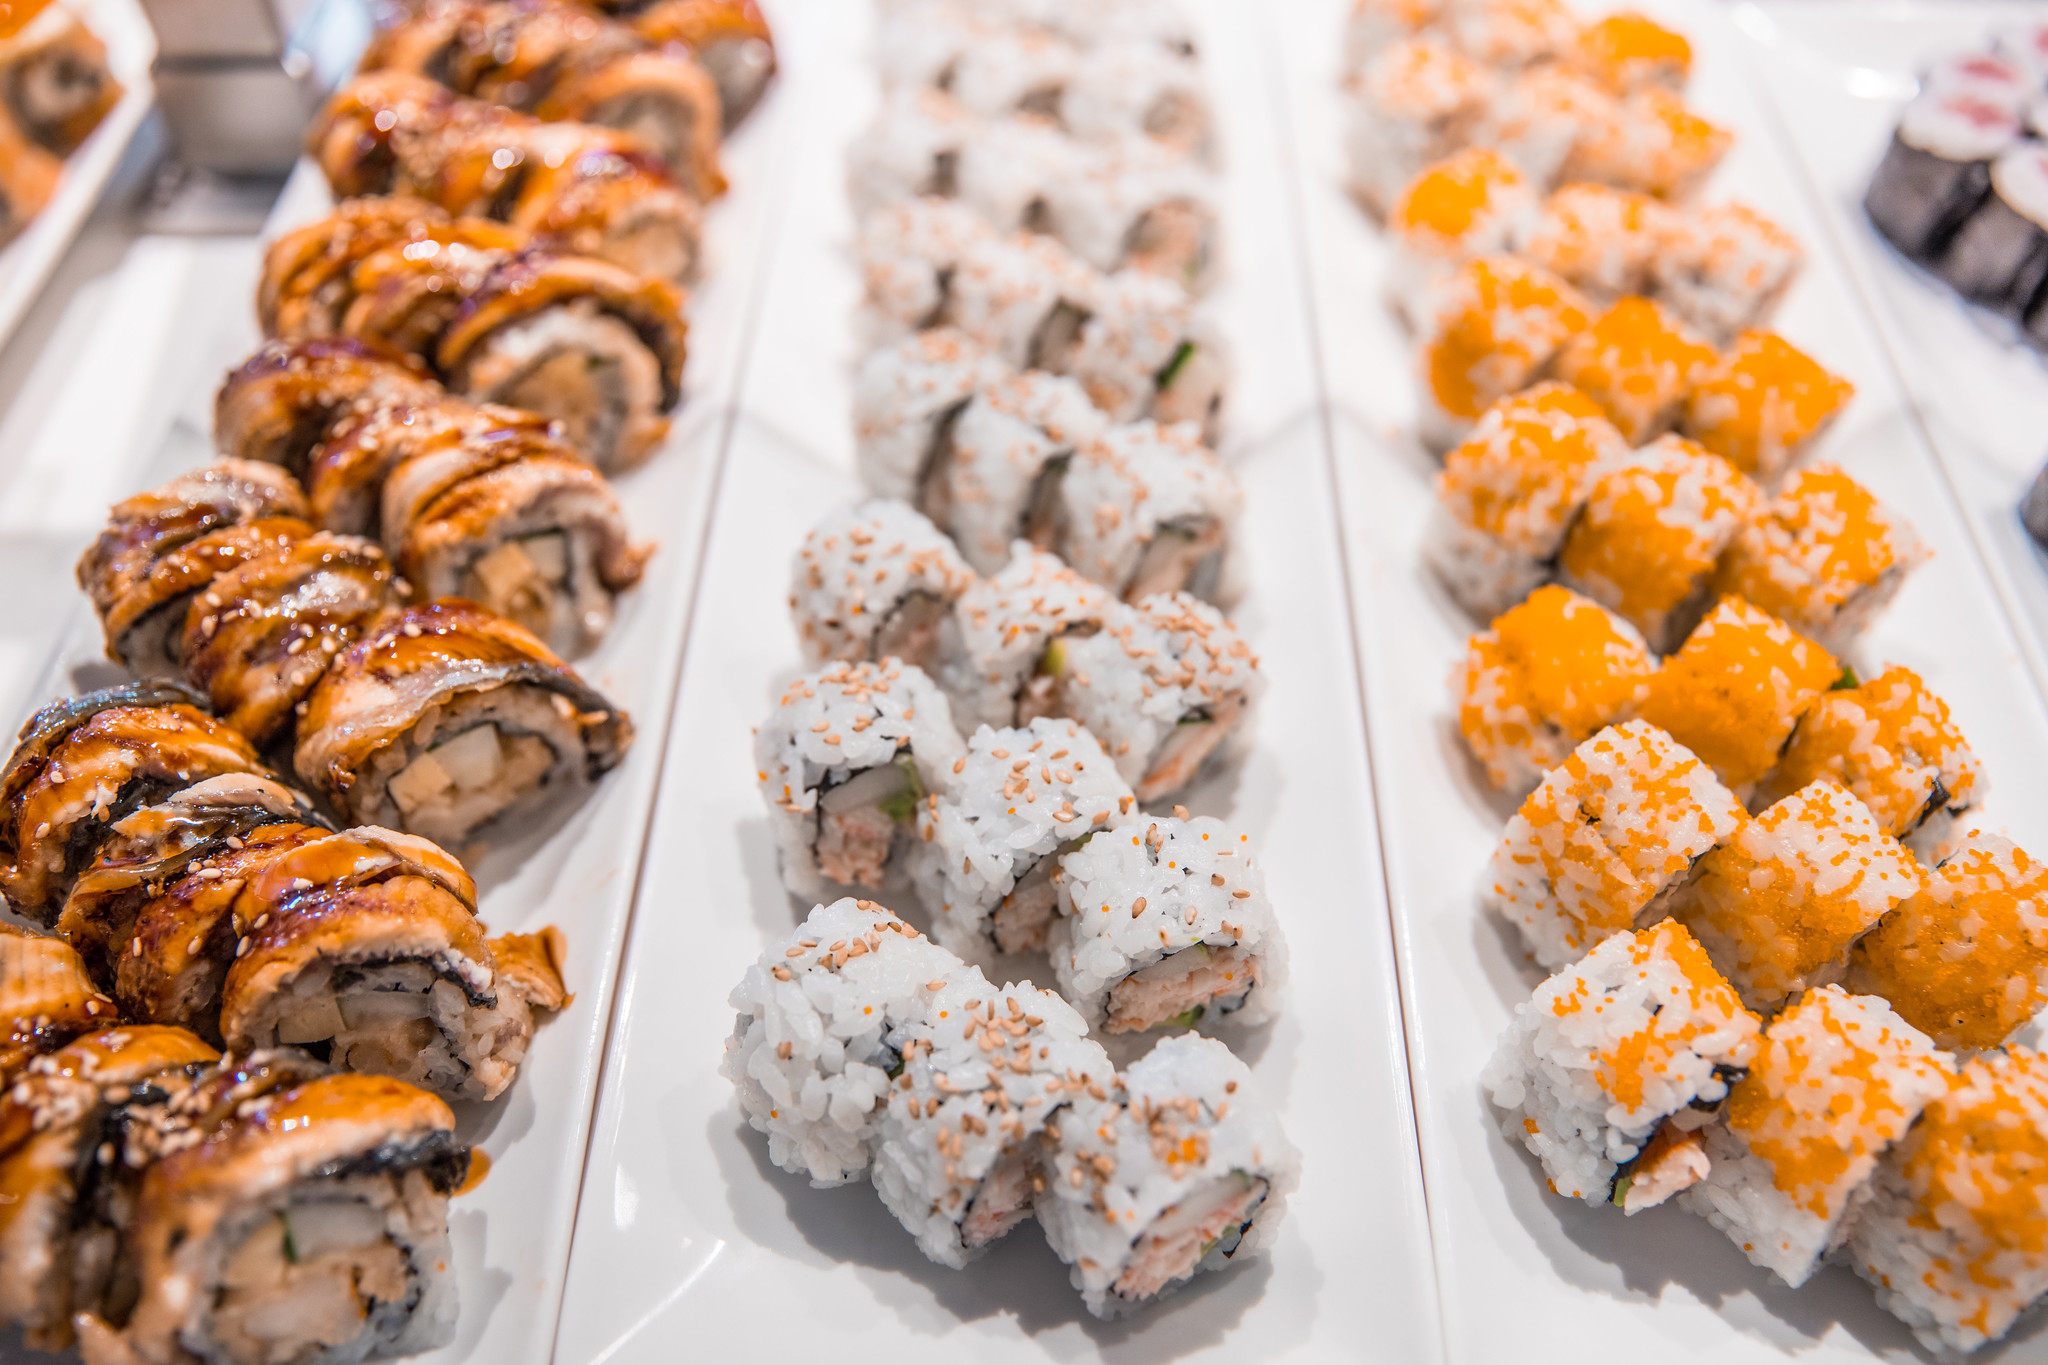 Kaku's Sushi and Seafood Buffet - Kakus, Kaku's, Sushi Buffet, Waikiki Buffet, International Marketplace, Kakus sushi buffet